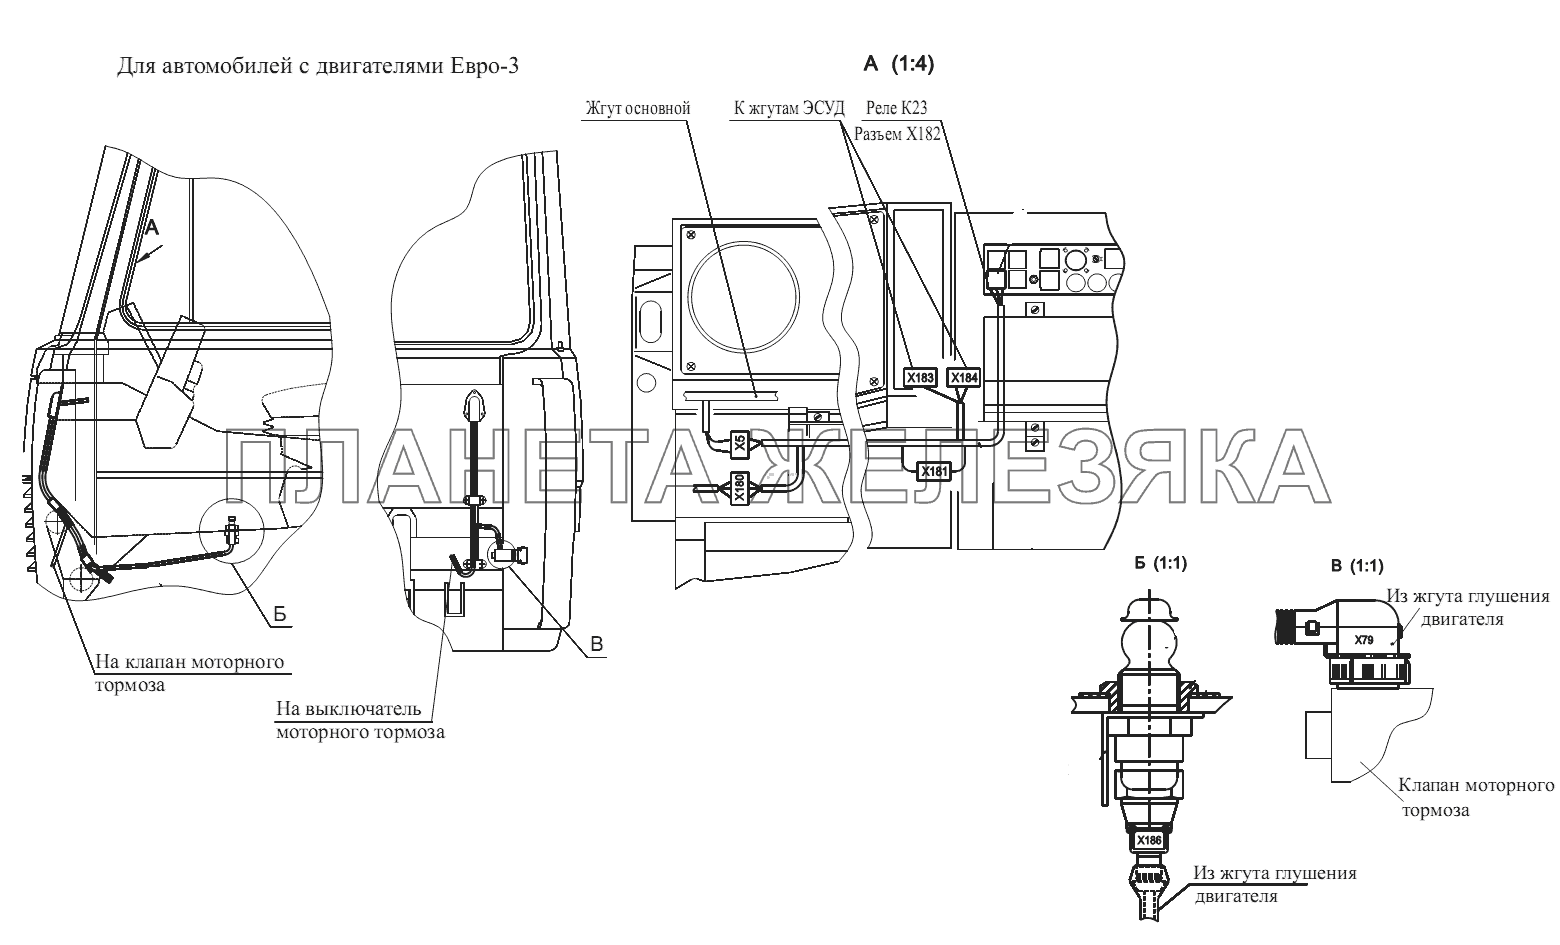 Расположение разъемов и элементов электрооборудования управления моторным тормозом МАЗ-555102, 5551А2